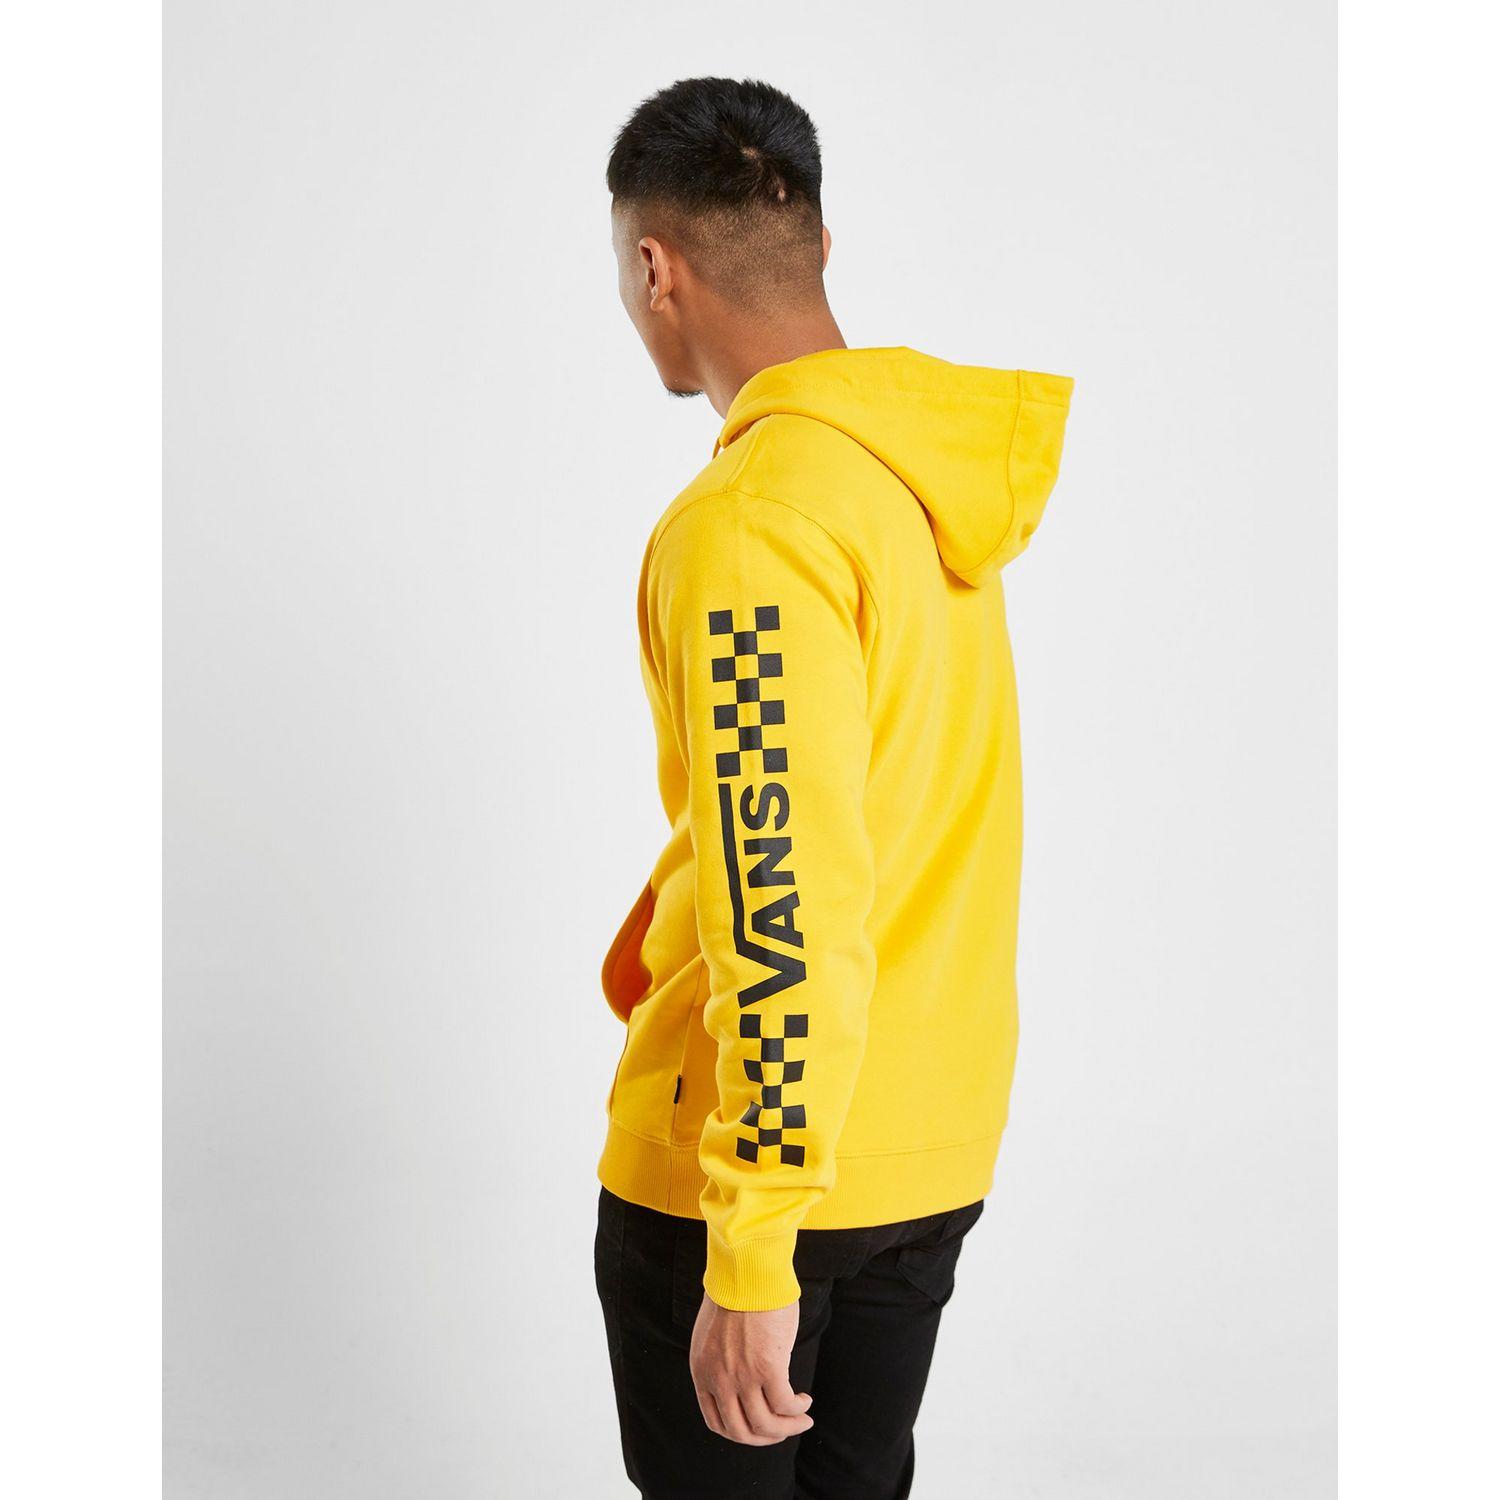 vans hoodies yellow